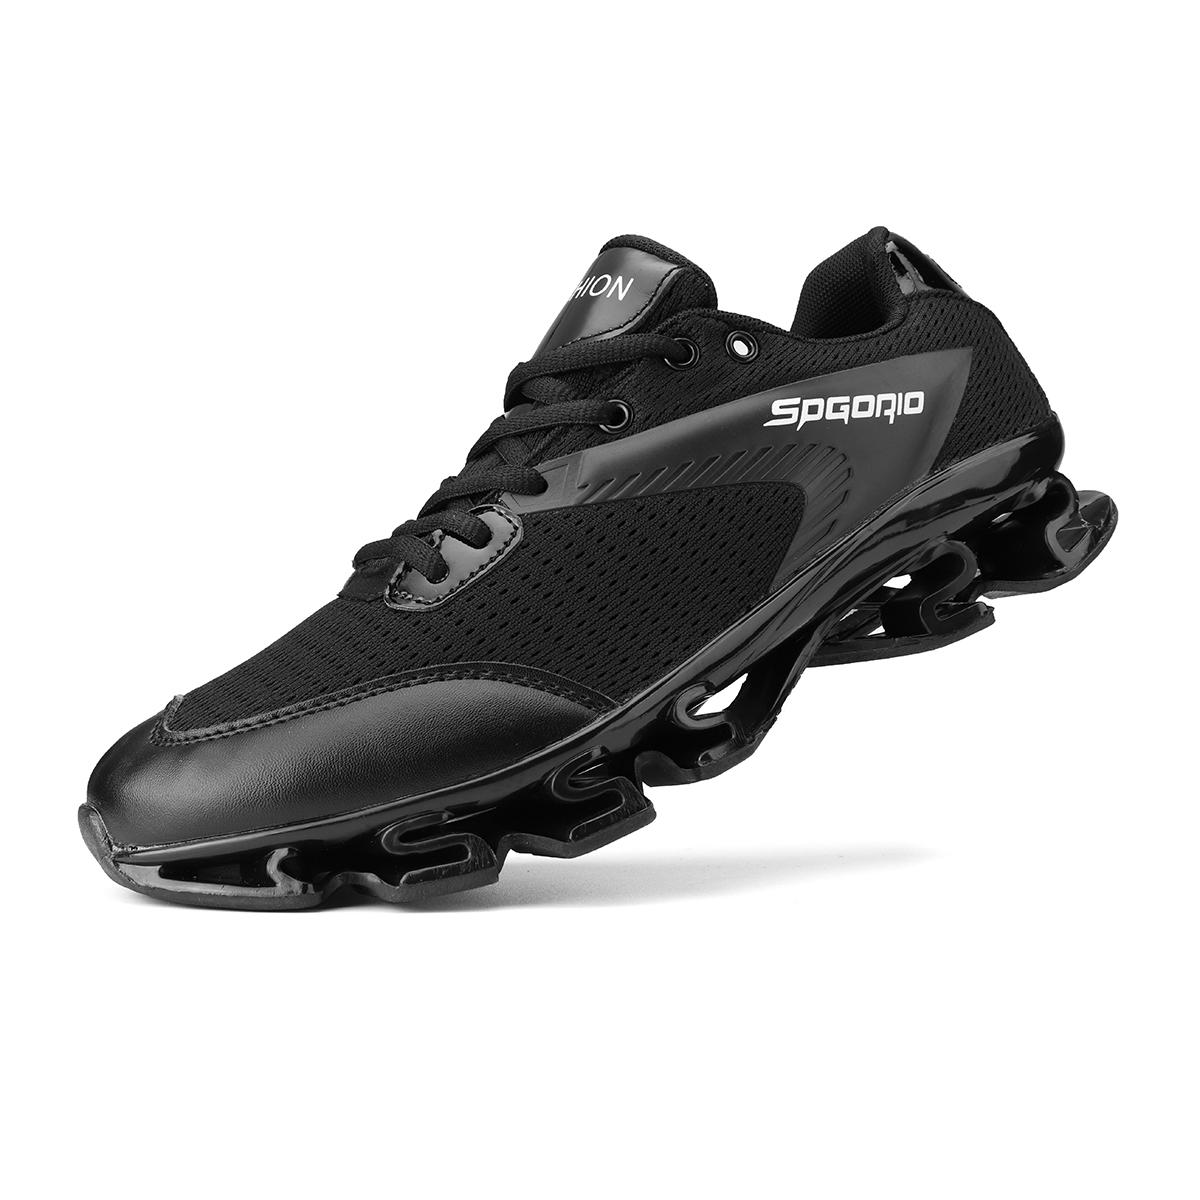 TENGOO Blade Sneakers Running Shoes Outdoor Breathable Jogging Sport Blade Krasovki Walk Sneakers